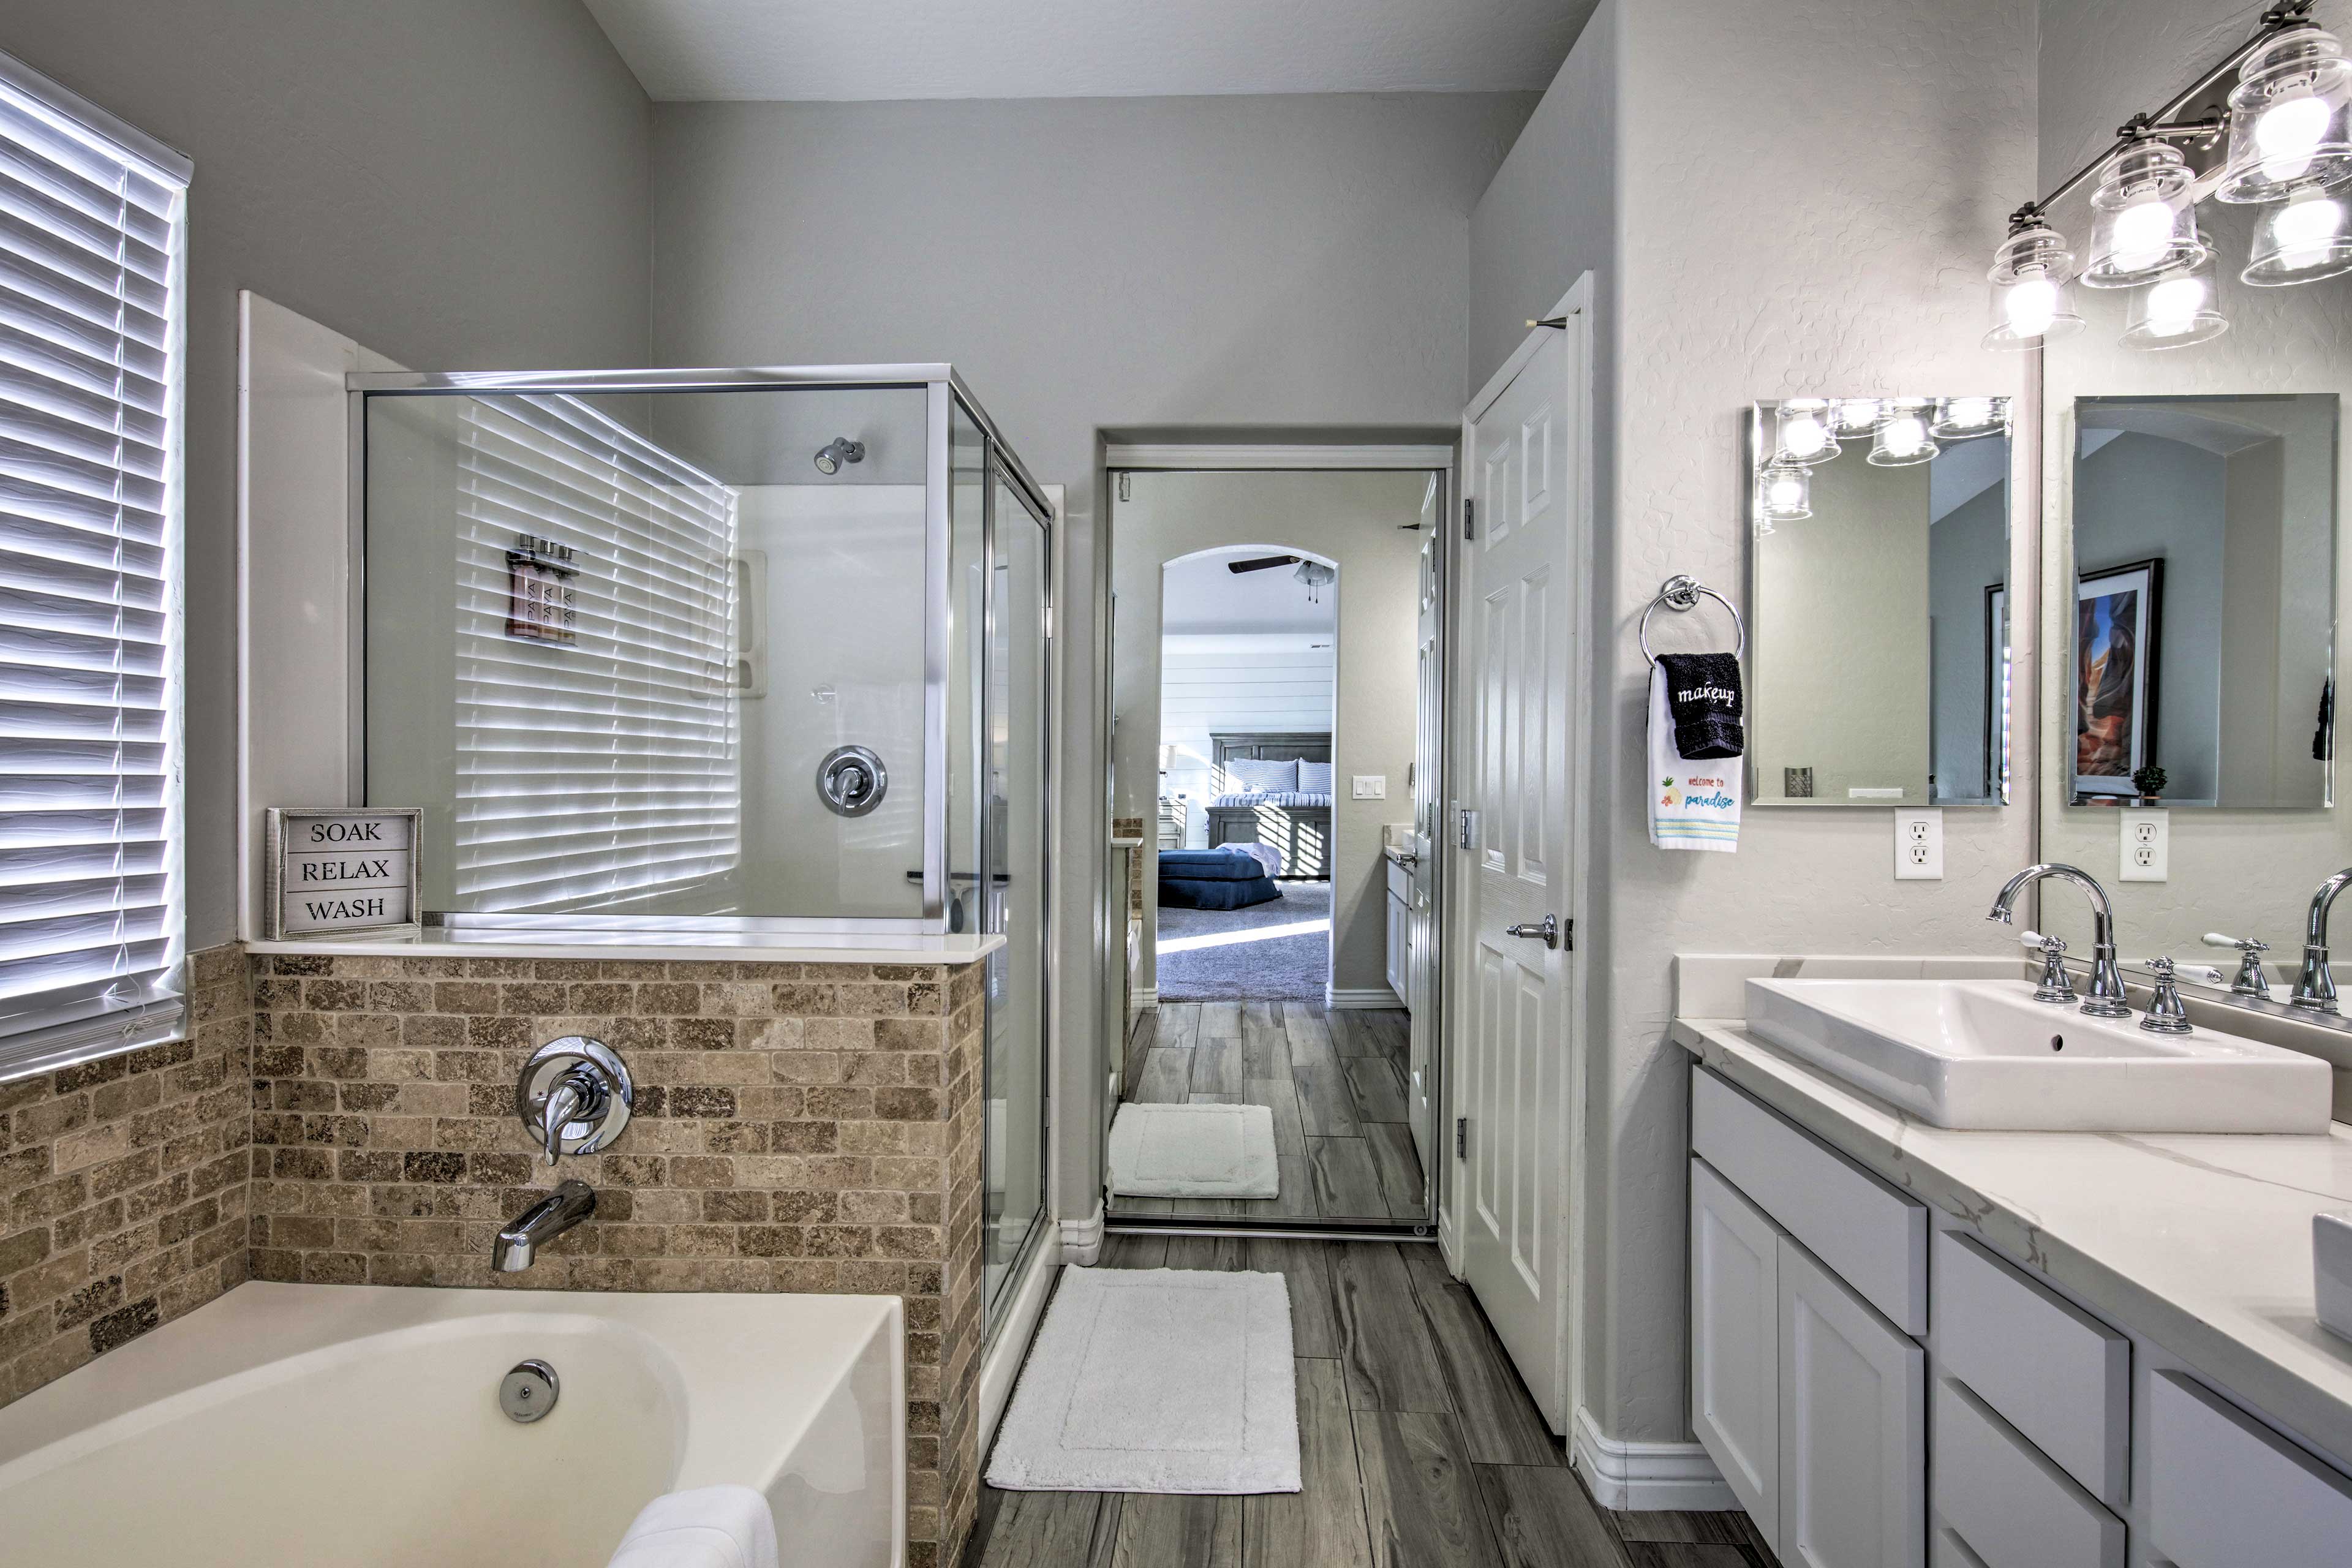 Take a shower or a bath in this elegant bathroom.